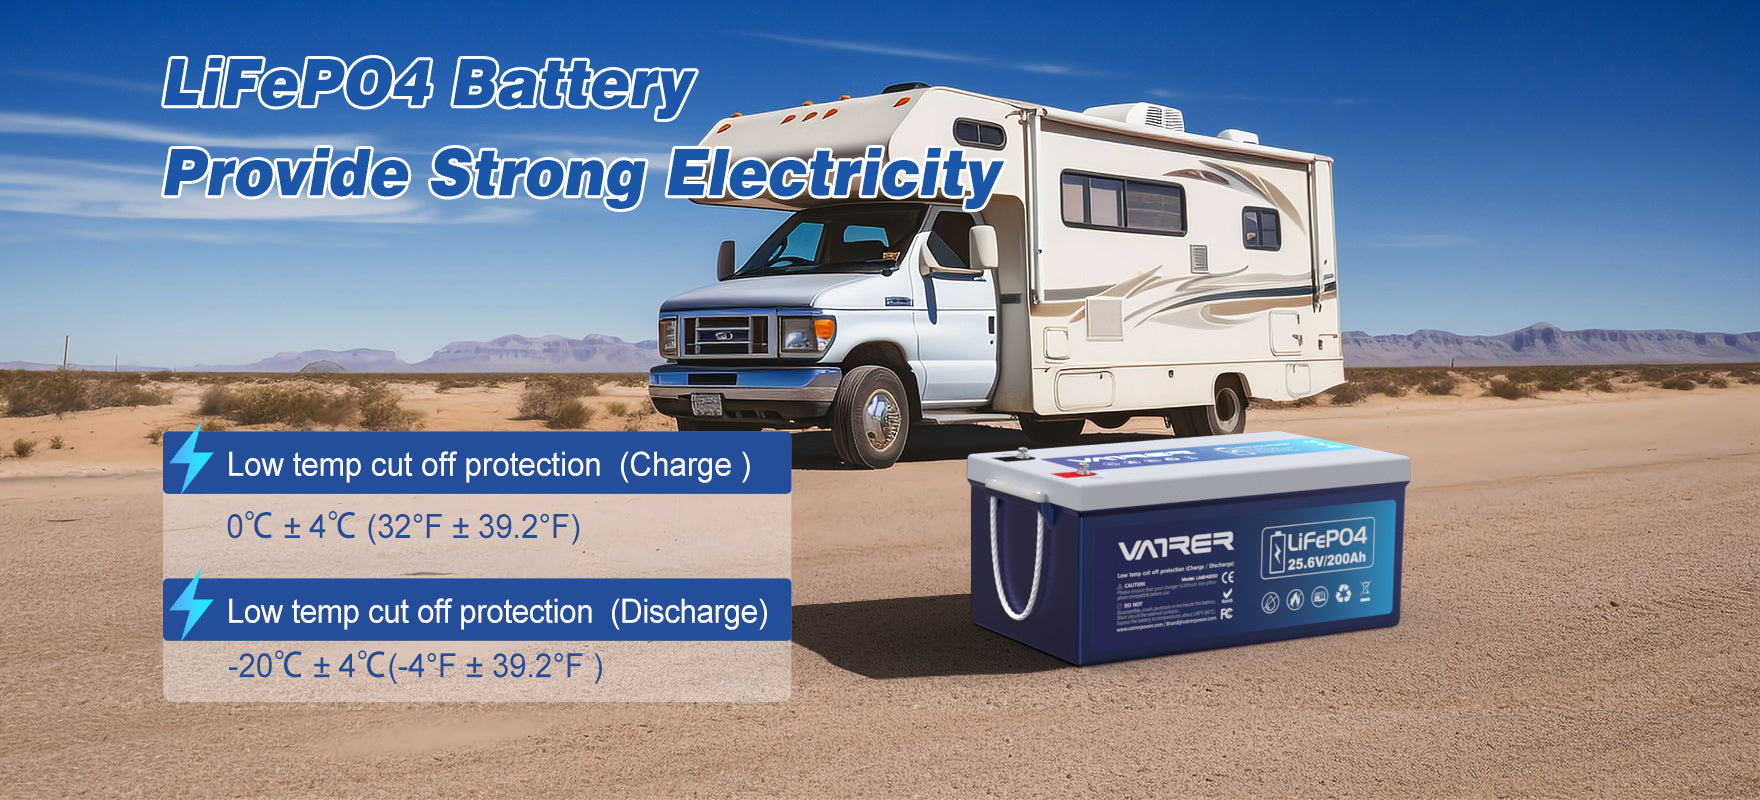 LiFeP04 バッテリーは強力な電力を提供します